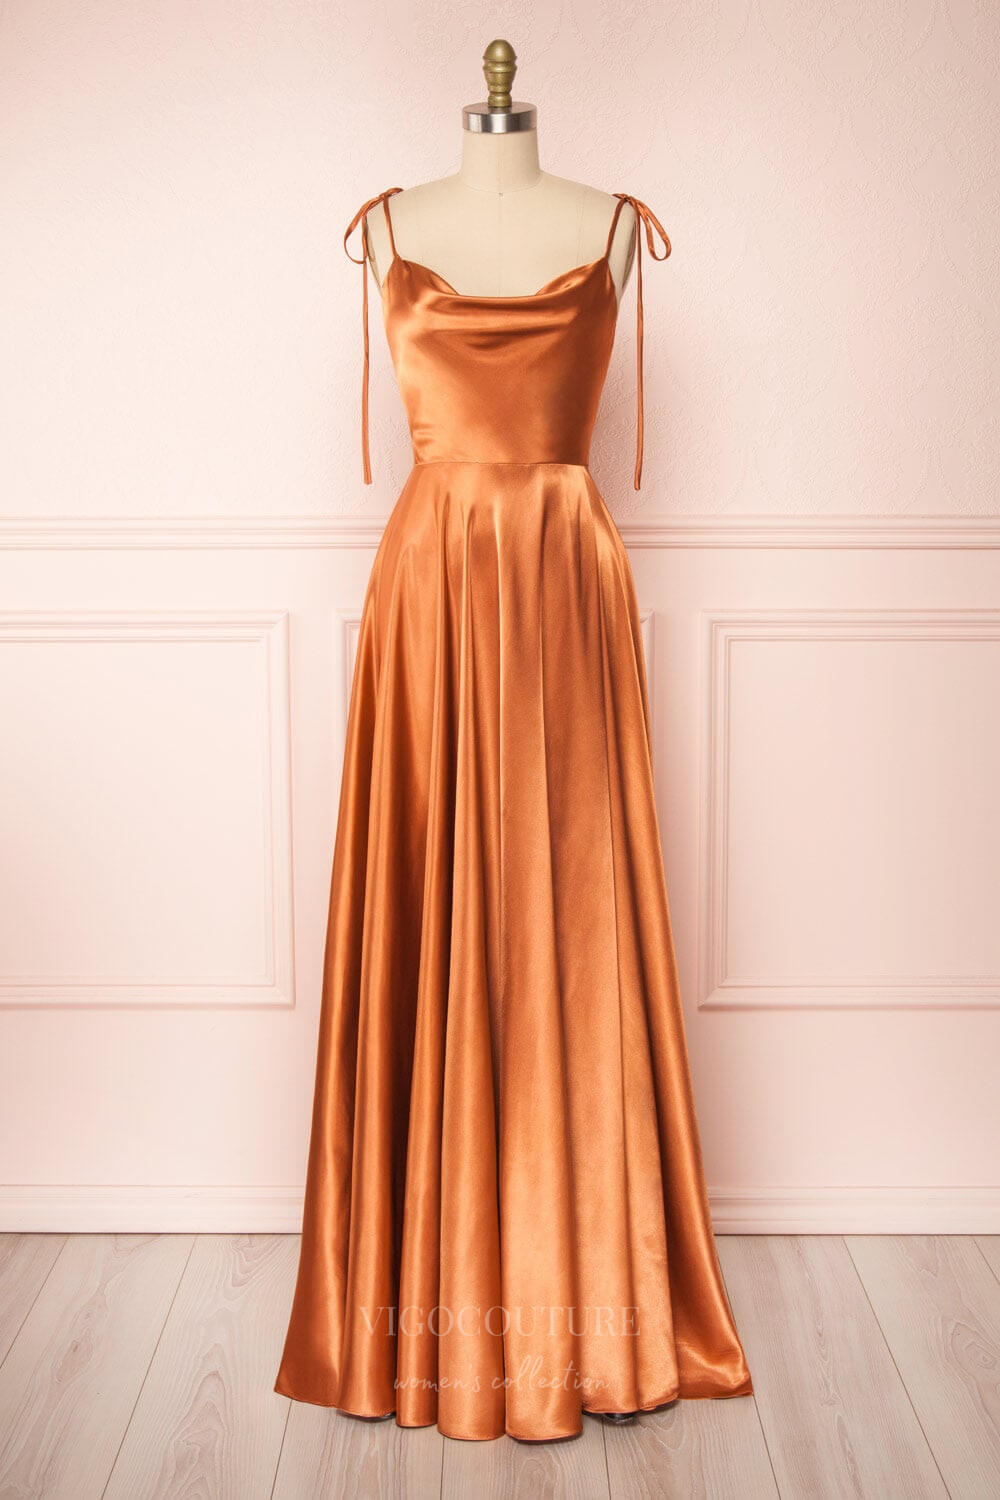 vigocouture-Silver Spaghetti Strap Prom Dress 20574-Prom Dresses-vigocouture-Orange-US2-